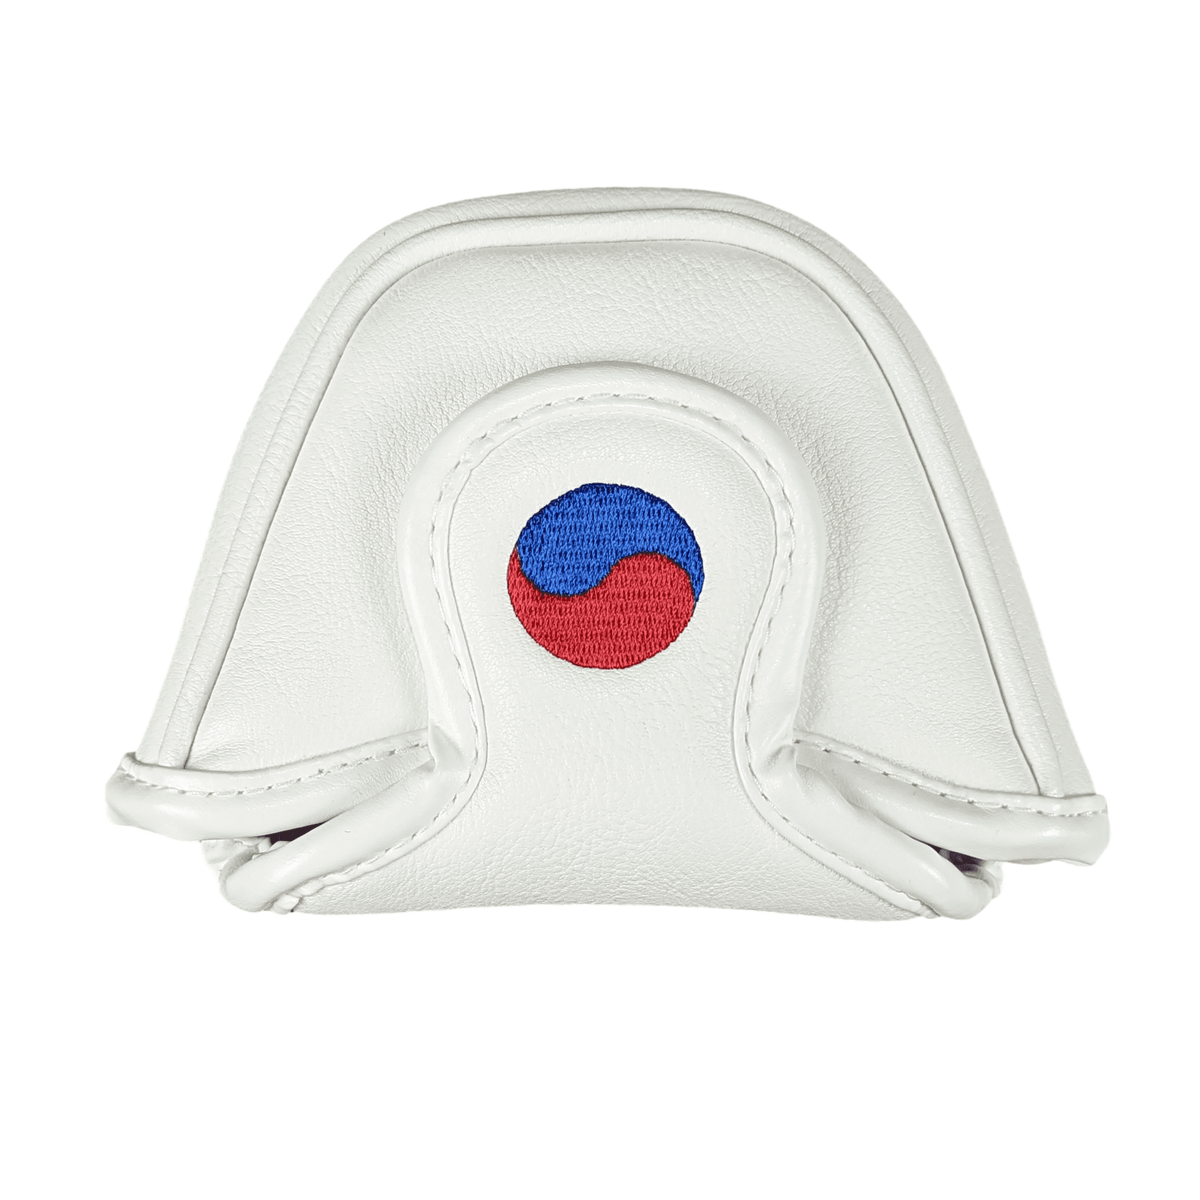 Korea Flag - MALLET Putter Headcover